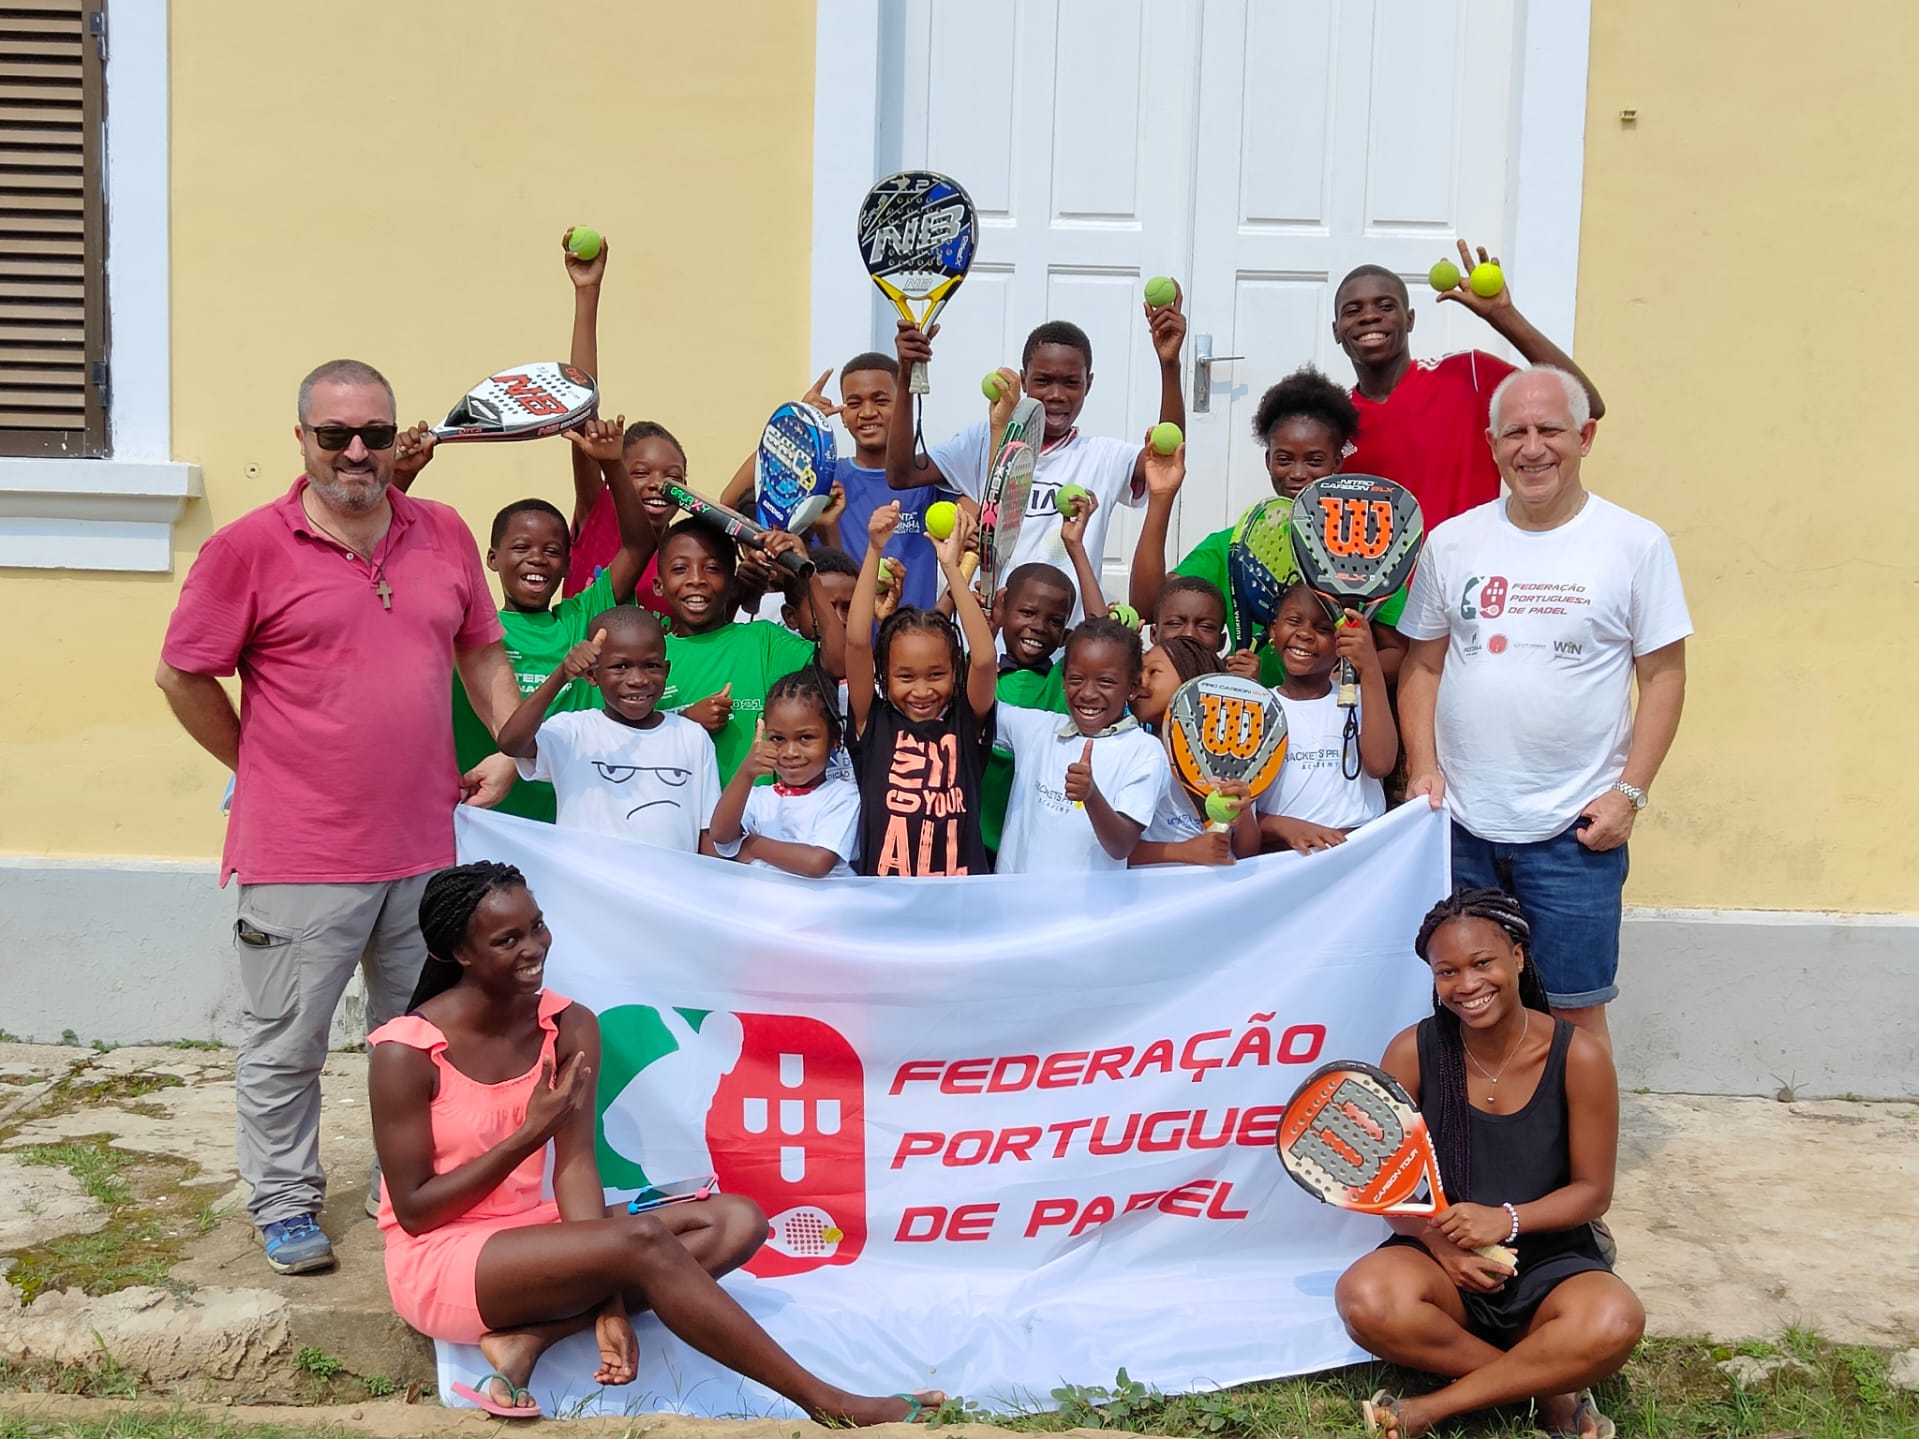 La gran iniciativa de la federación portuguesa en Príncipe